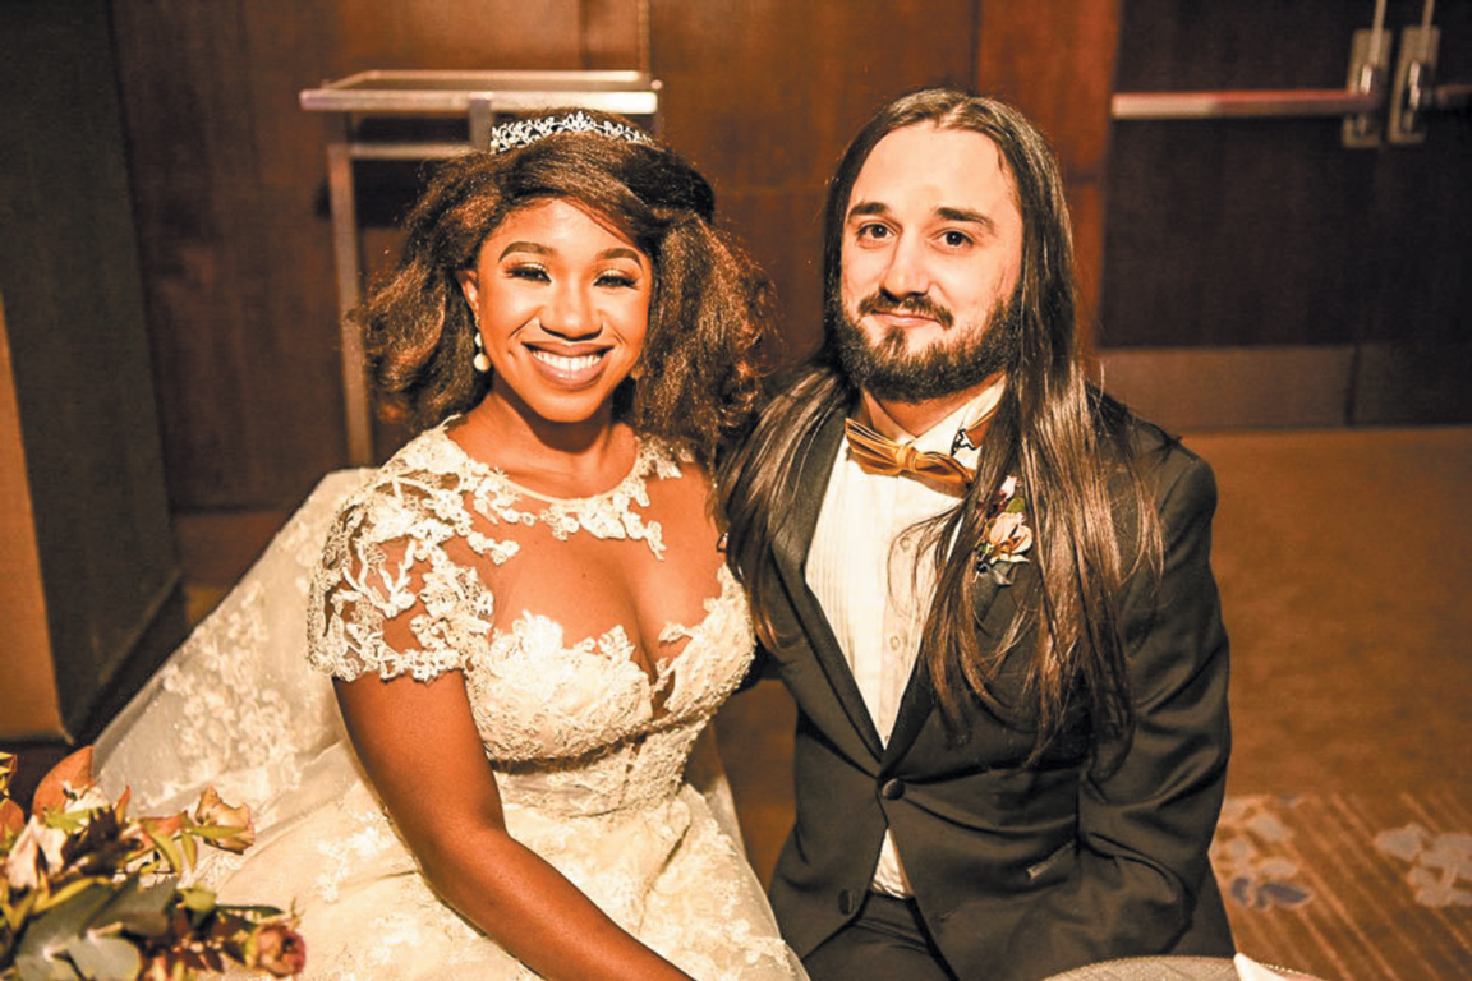 THE LIVELY WEDDING OF ABIMBOLA AYININUOLA AND PAUL TAFOYA AT CONRAD HOTEL, NEW YORK